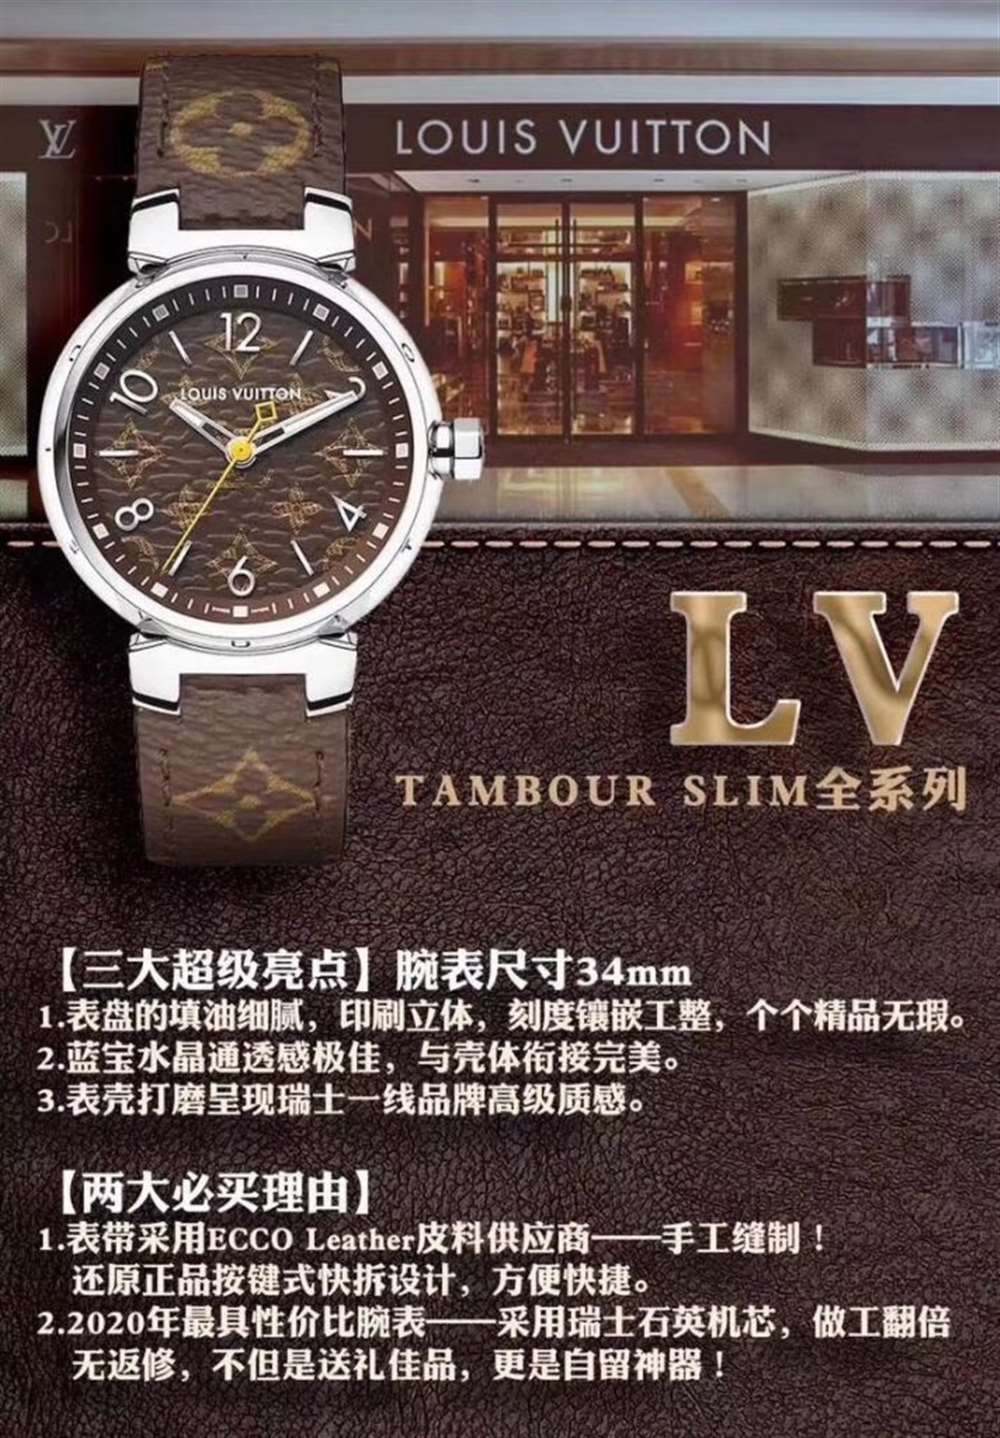 LV厂超神之作-TAMBOUR SLIM全系列陆续空降市场  第3张